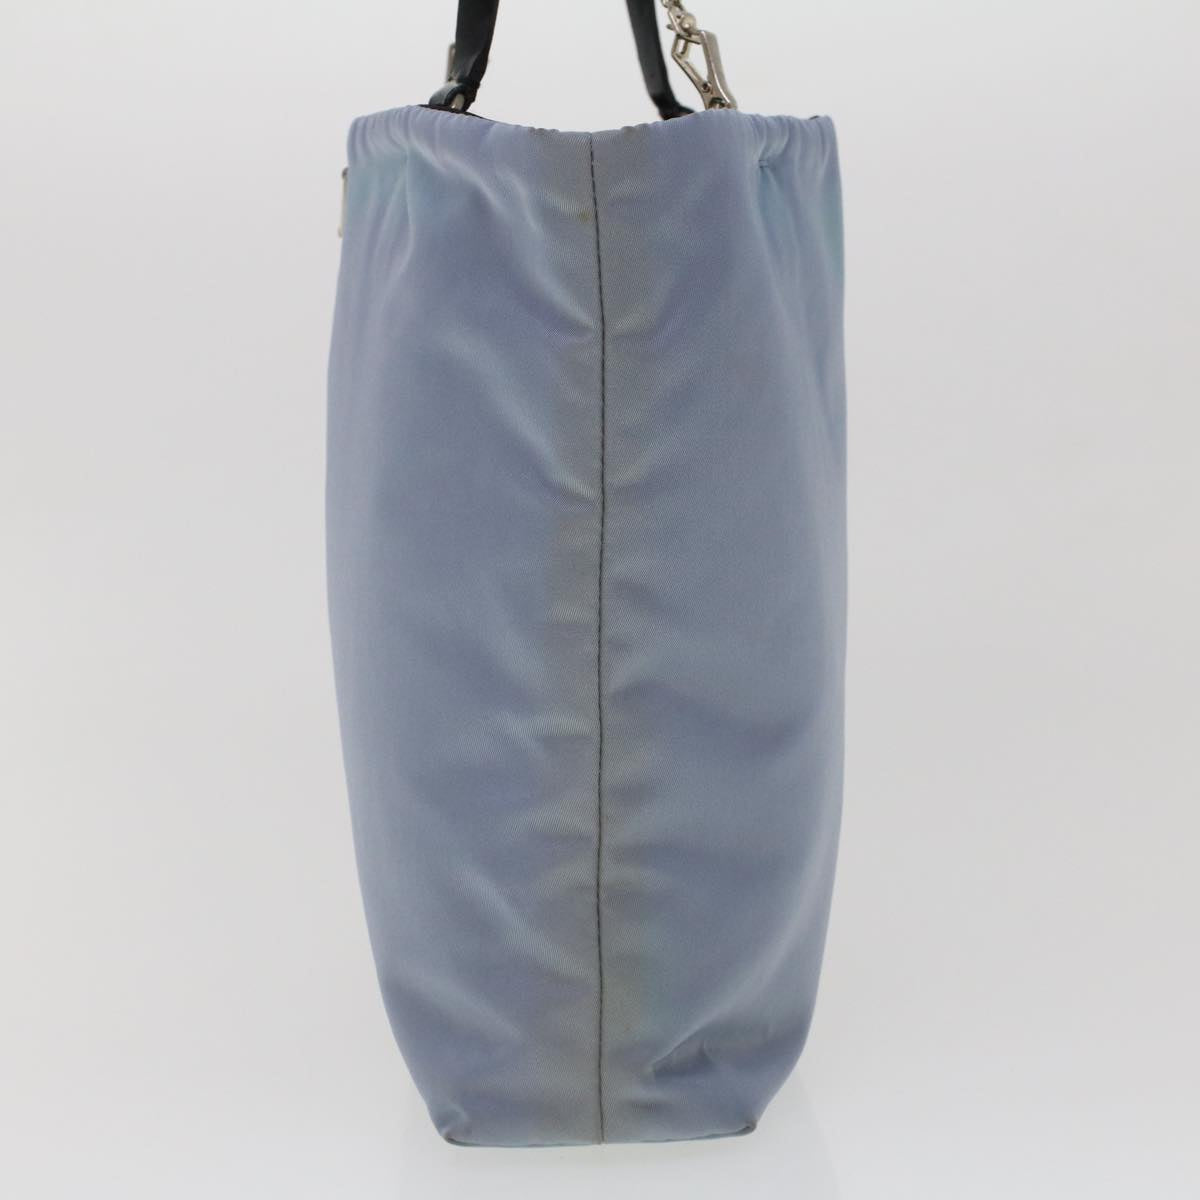 PRADA Hand Bag Nylon Light Blue Auth cl559